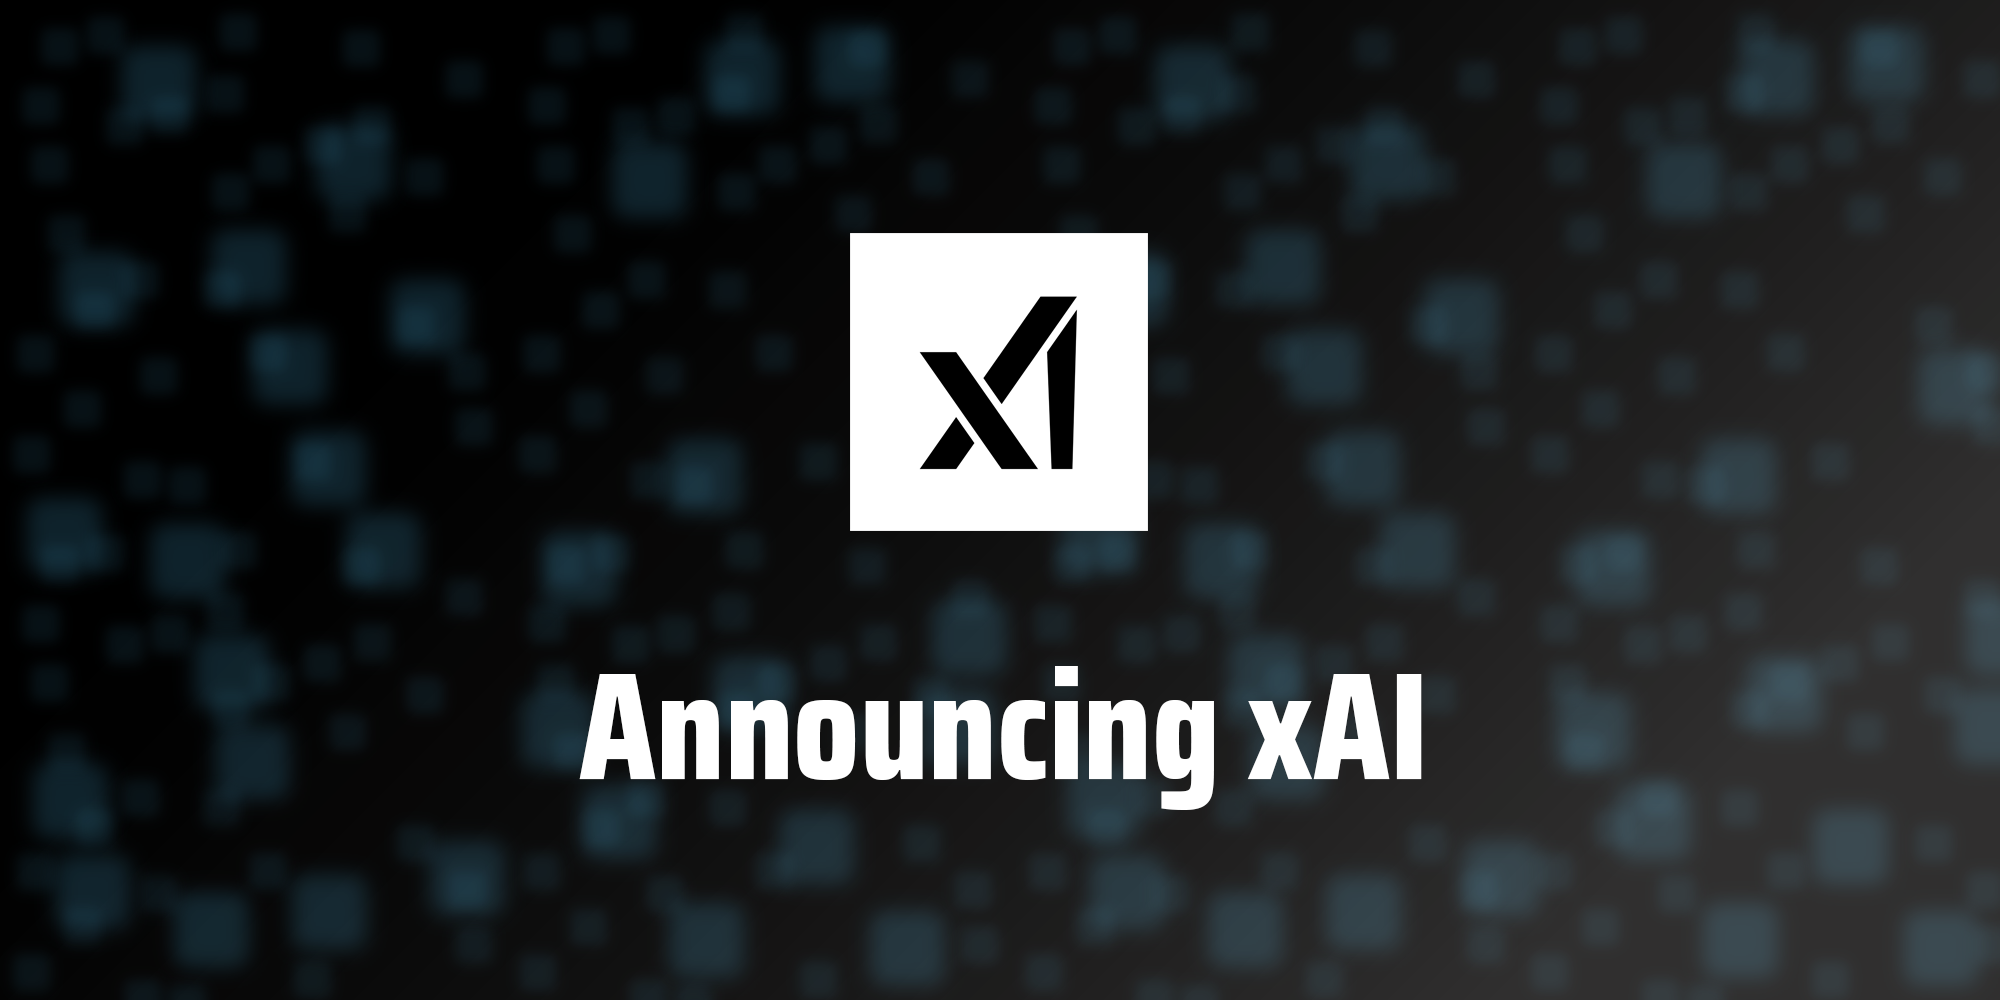 xAI frigiver første model af kunstig intelligens til en "udvalgt gruppe af brugere